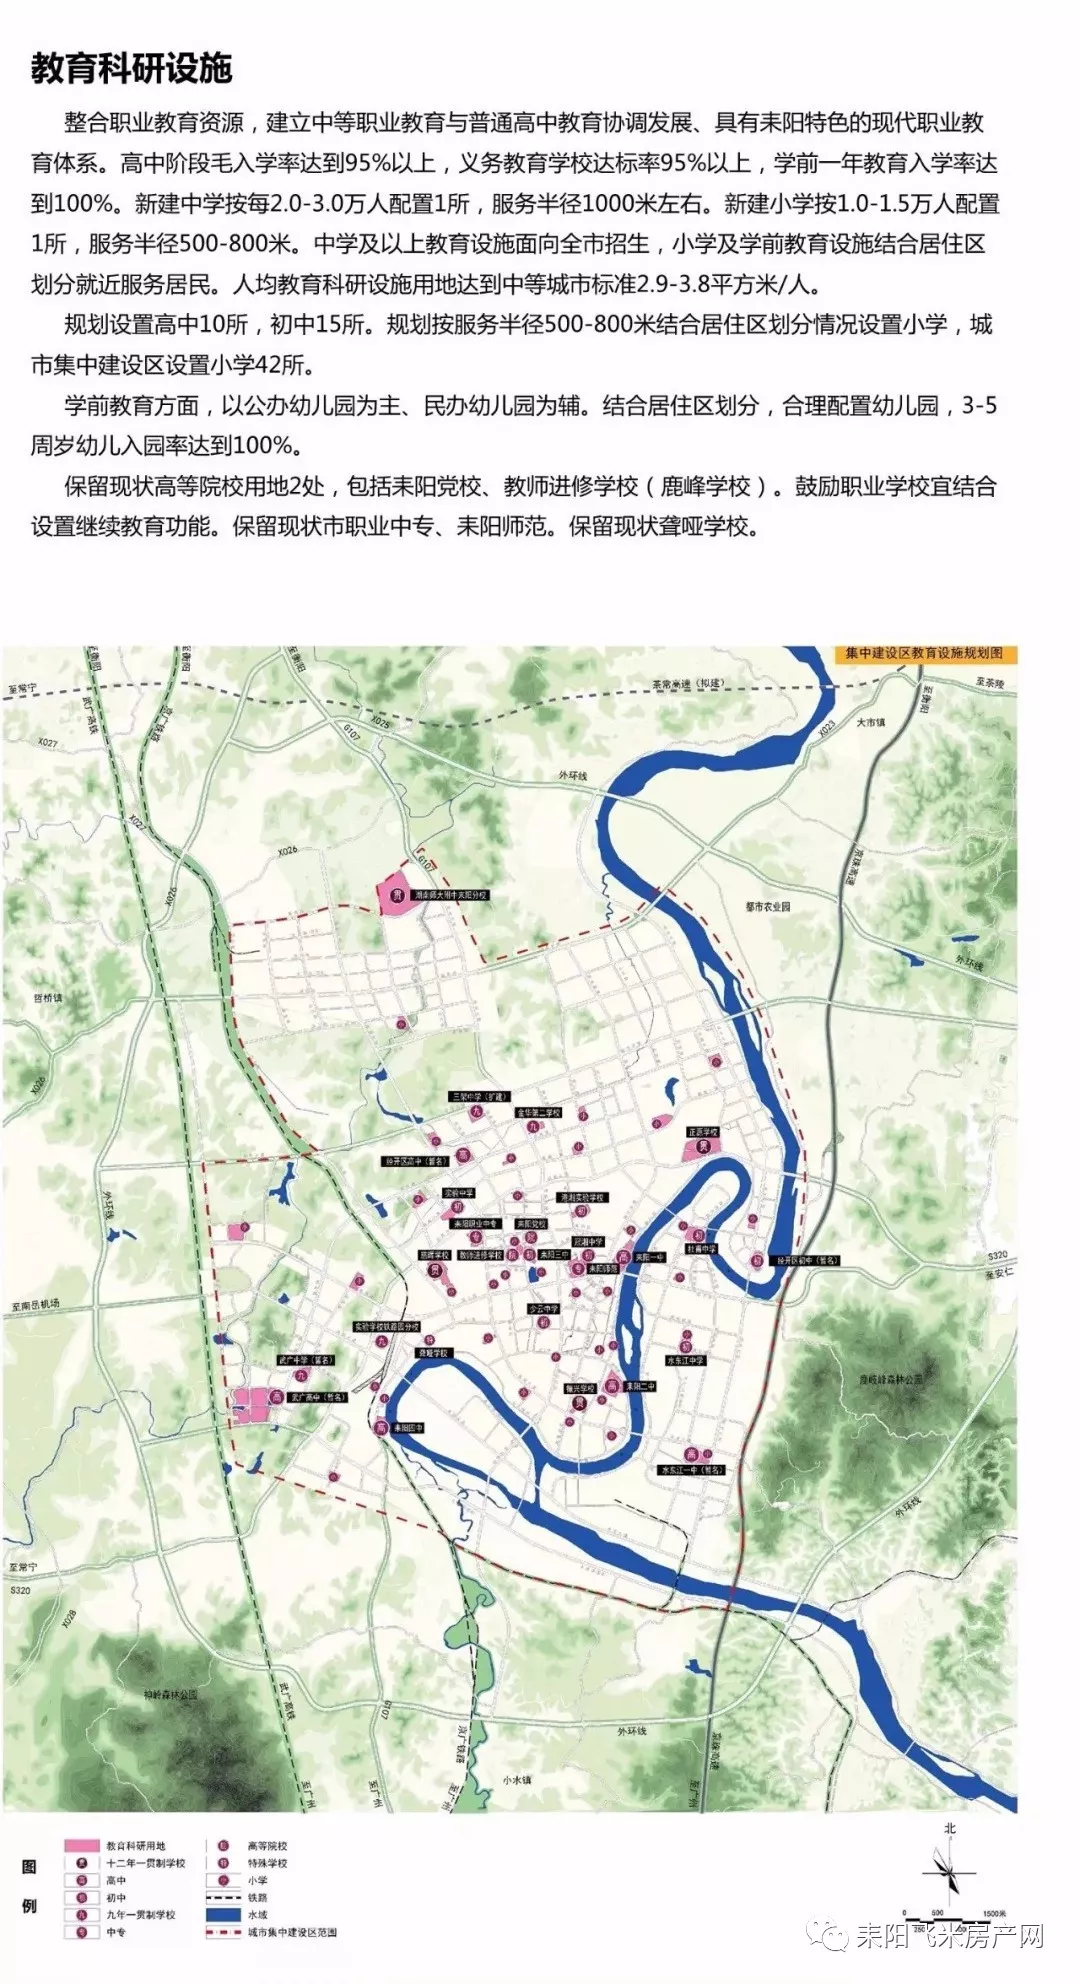 耒阳市城市总体规划(2015-2030)--湘南地区次中心城市